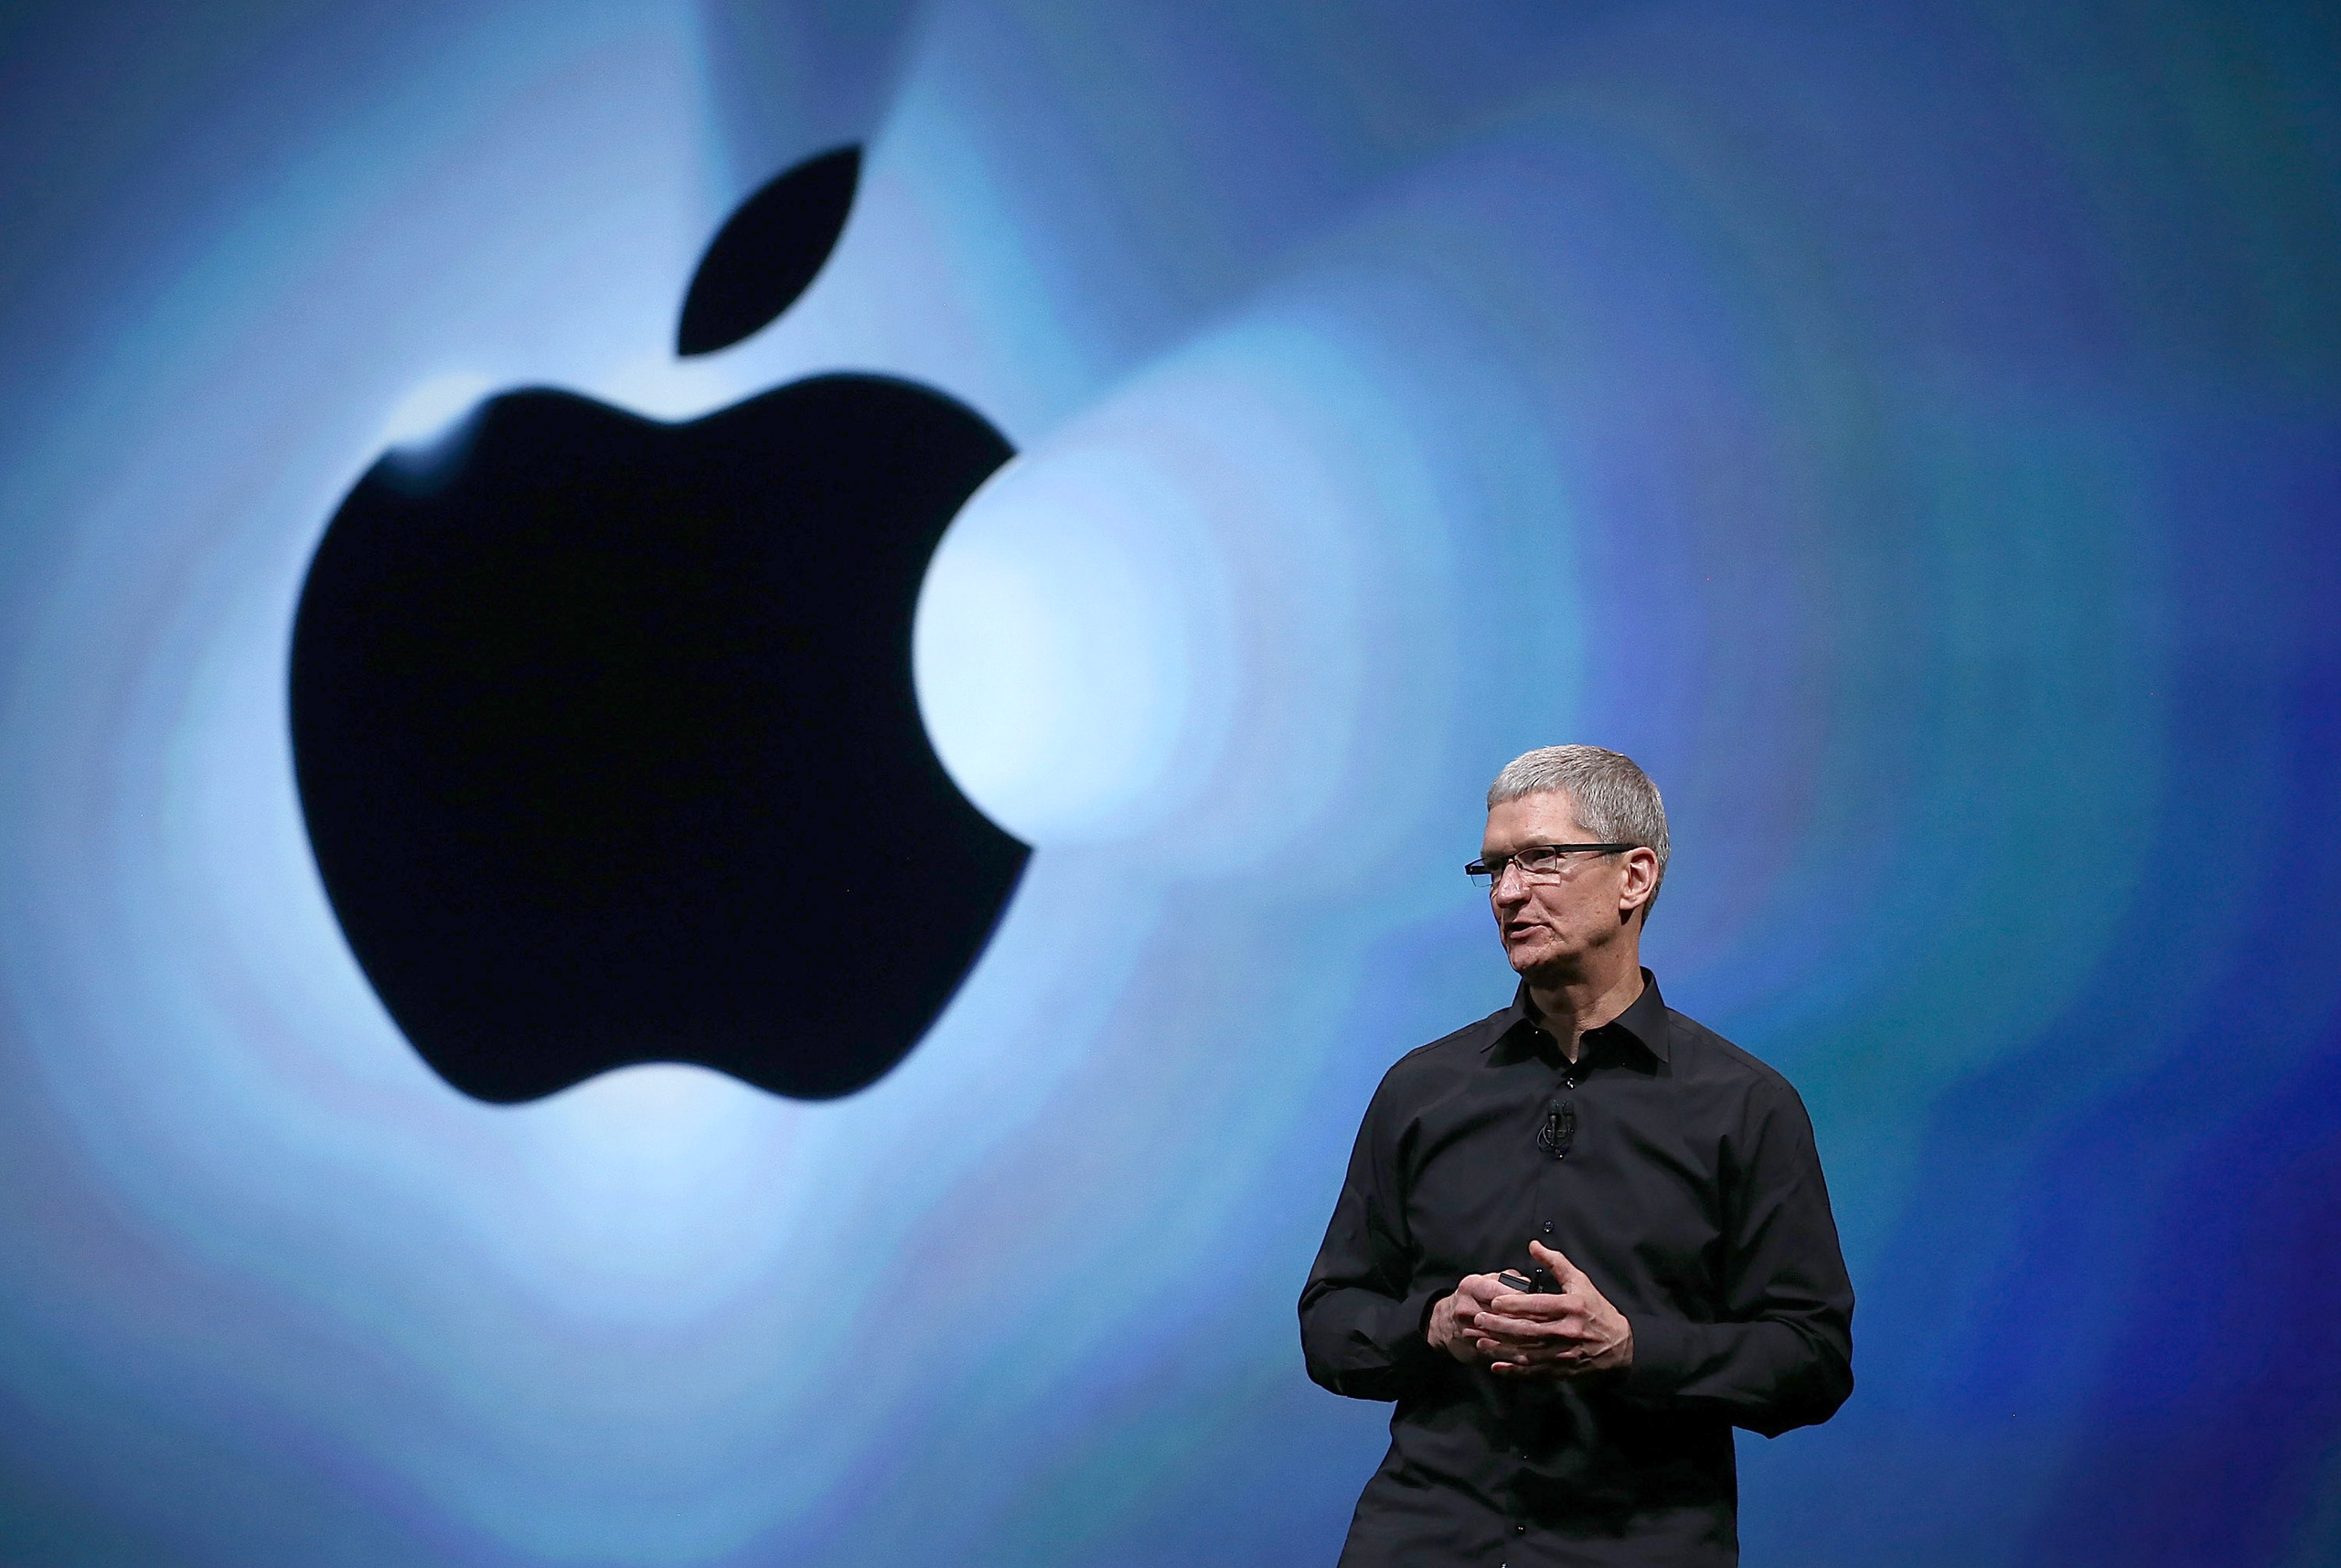 Thâu tóm 100 công ty trong 6 năm, Apple đã thực hiện các vụ M&A im hơi lặng tiếng như thế nào? - Ảnh 1.